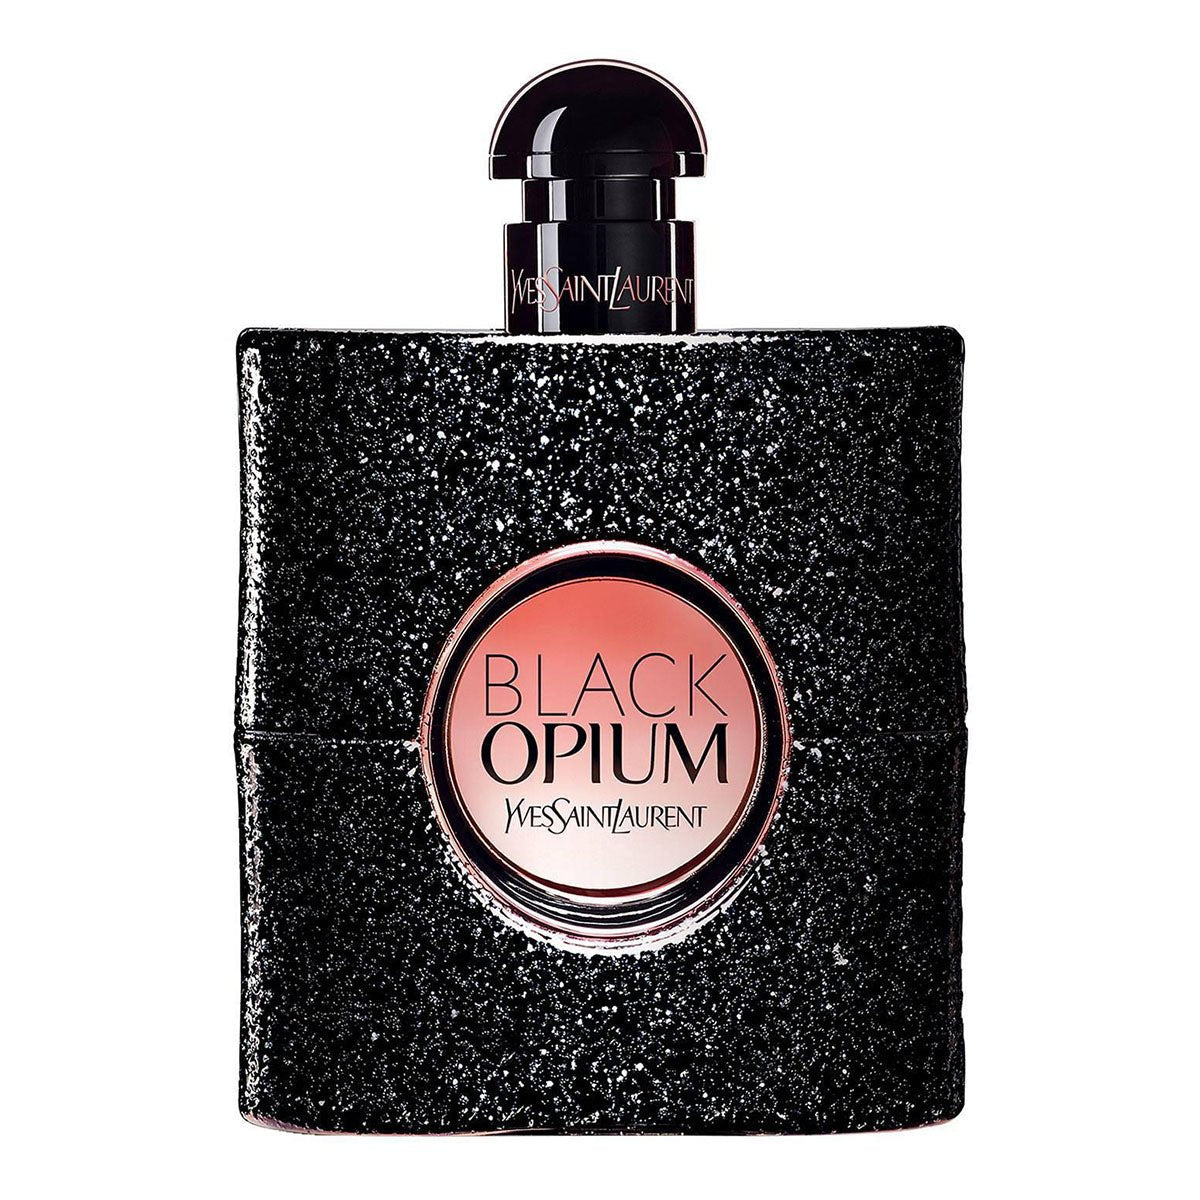 Yves Saint Laurent Black Opium Perfume Edp For Women 90ml - AllurebeautypkYves Saint Laurent Black Opium Perfume Edp For Women 90ml